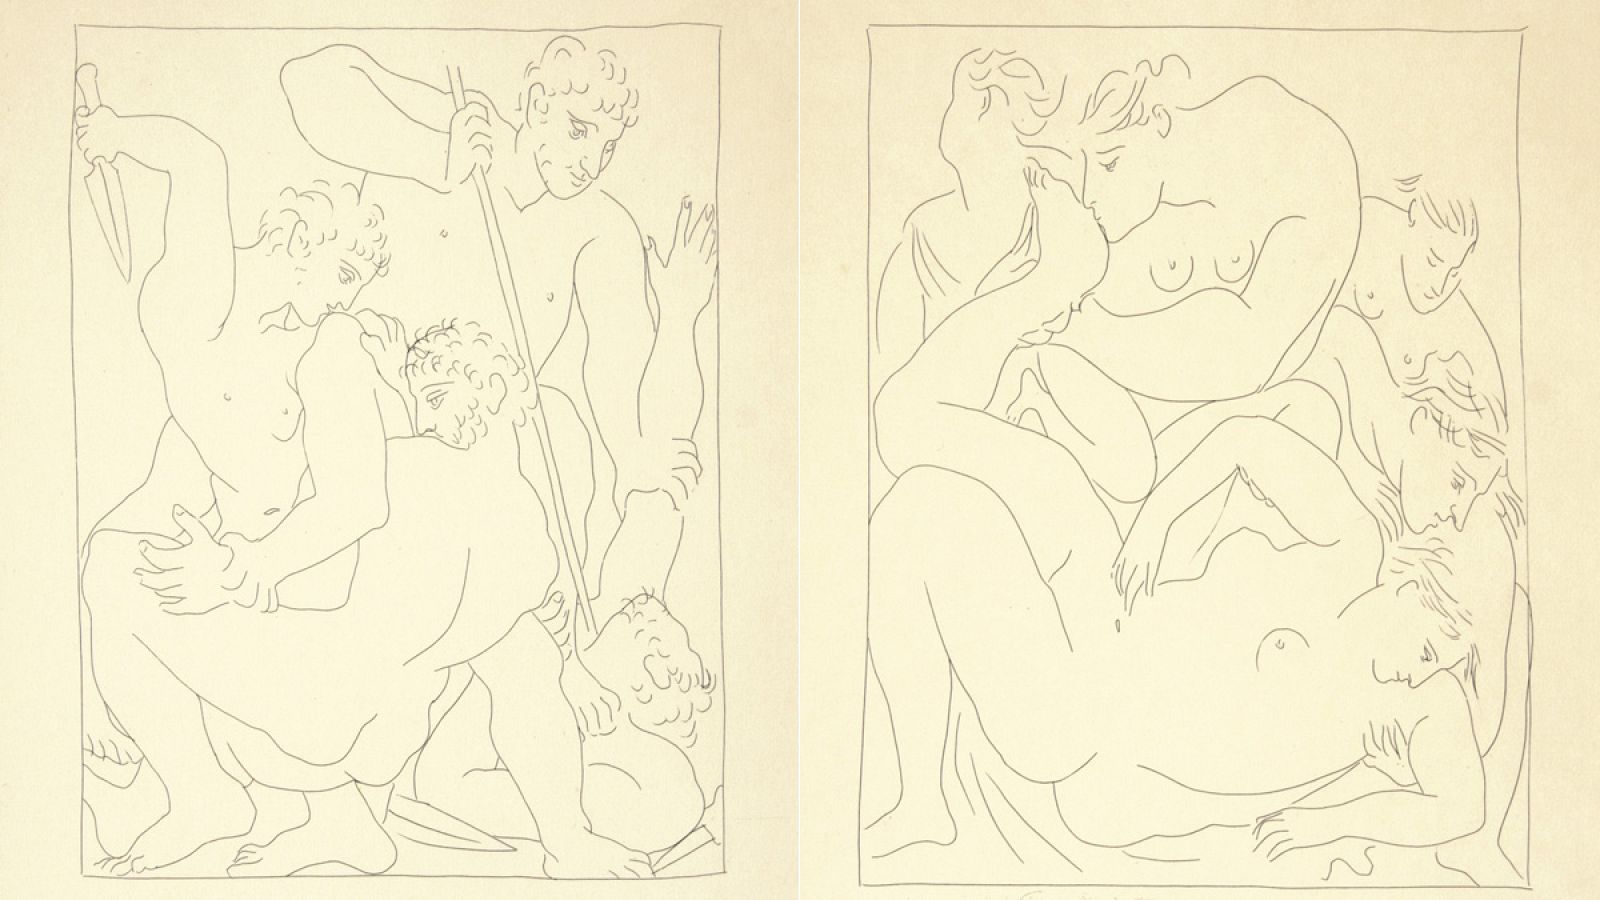 Dos de los aguafuertes de Picasso para ilustrar 'Las metamorfosis' de Ovidio.